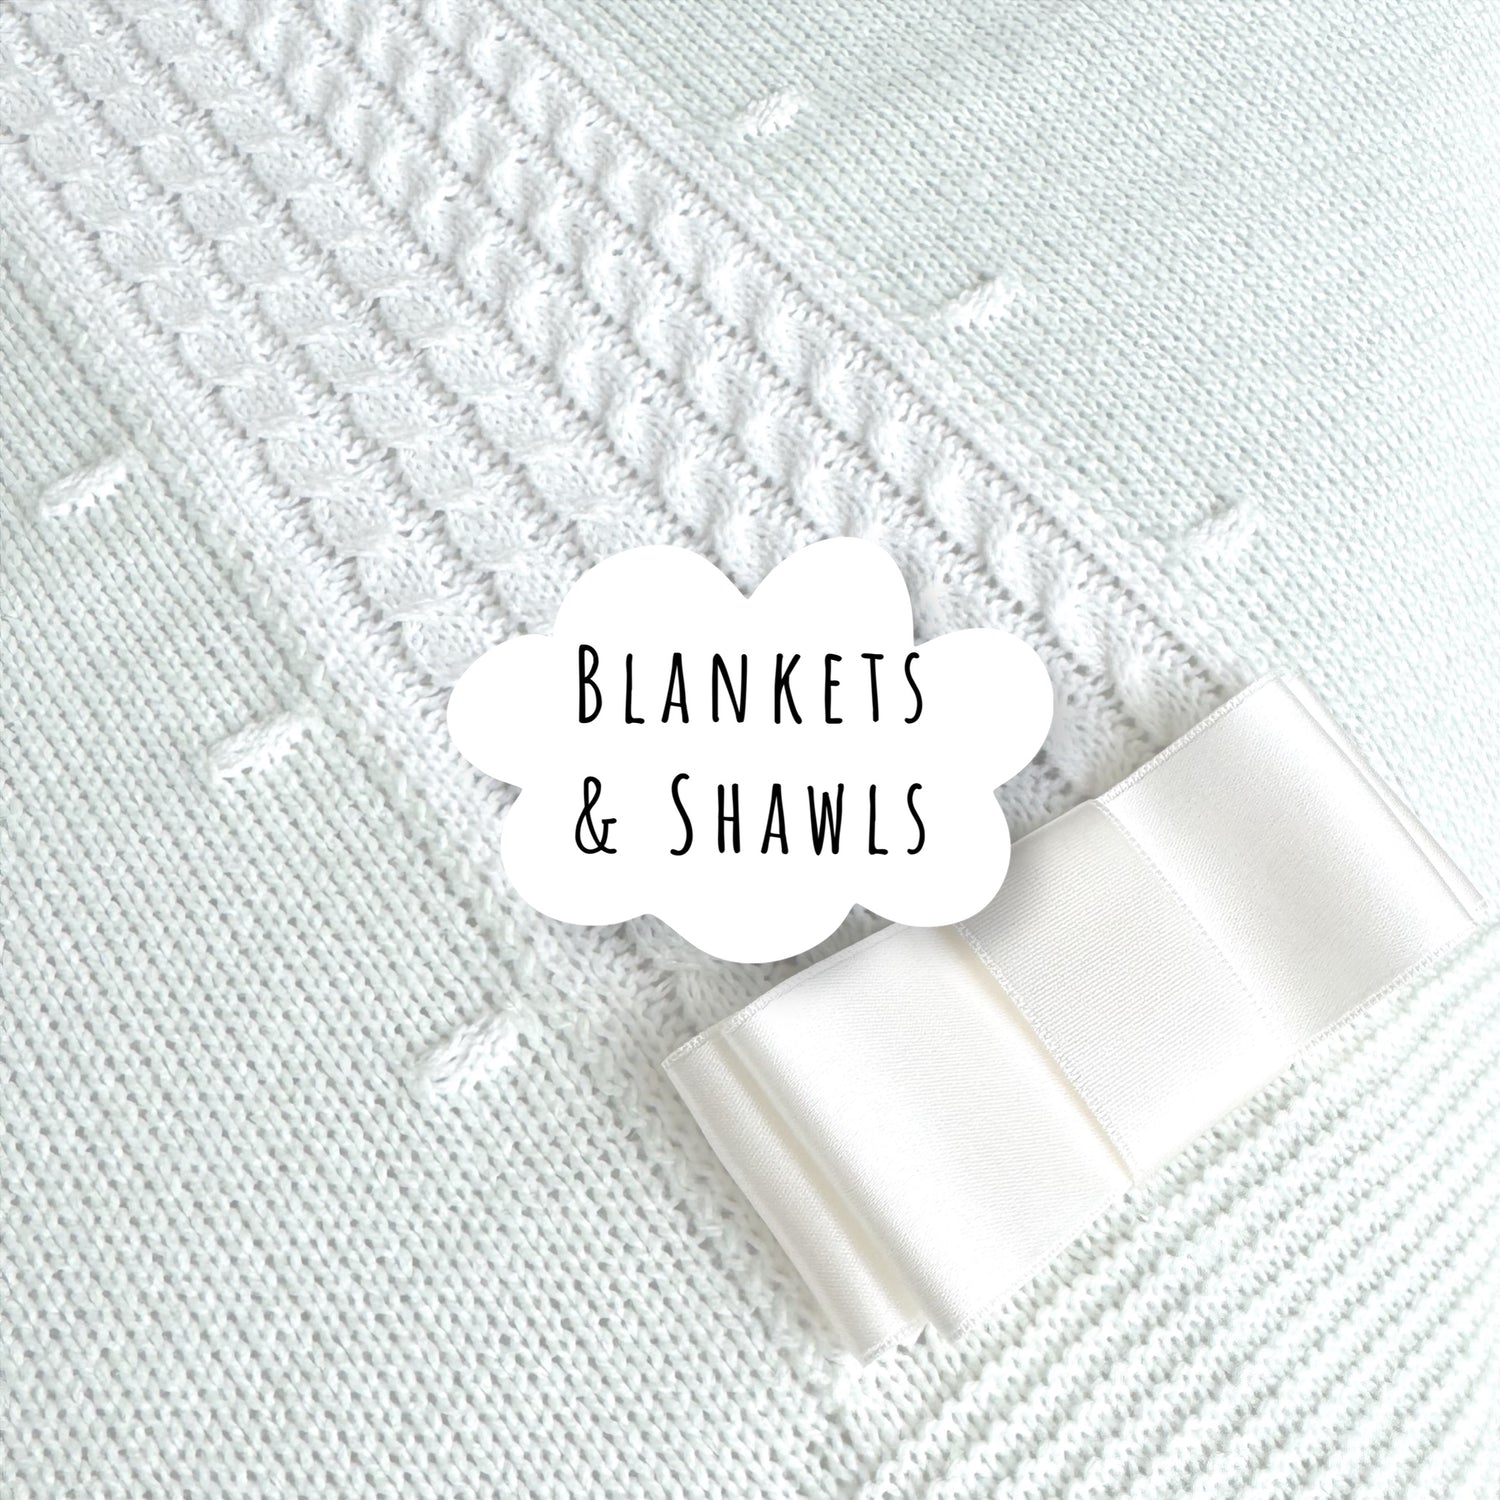 Blankets & Shawls